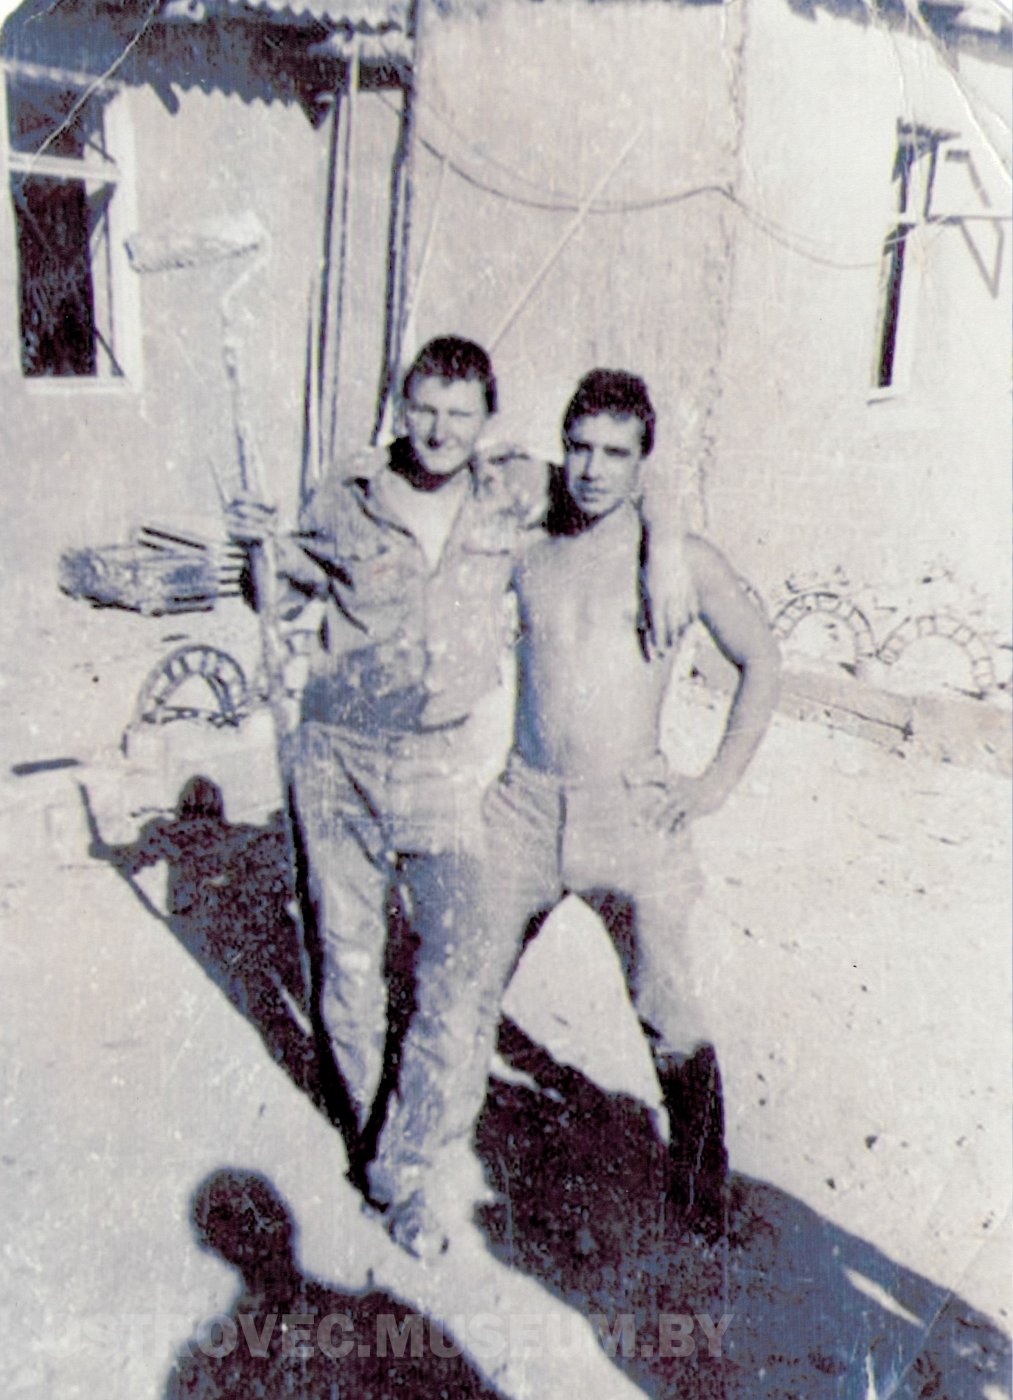 Козловский Вацлав Андреевич (слева) на фоне побеленного дома, с малярным валиком в руках. Афганистан, 1985 г.